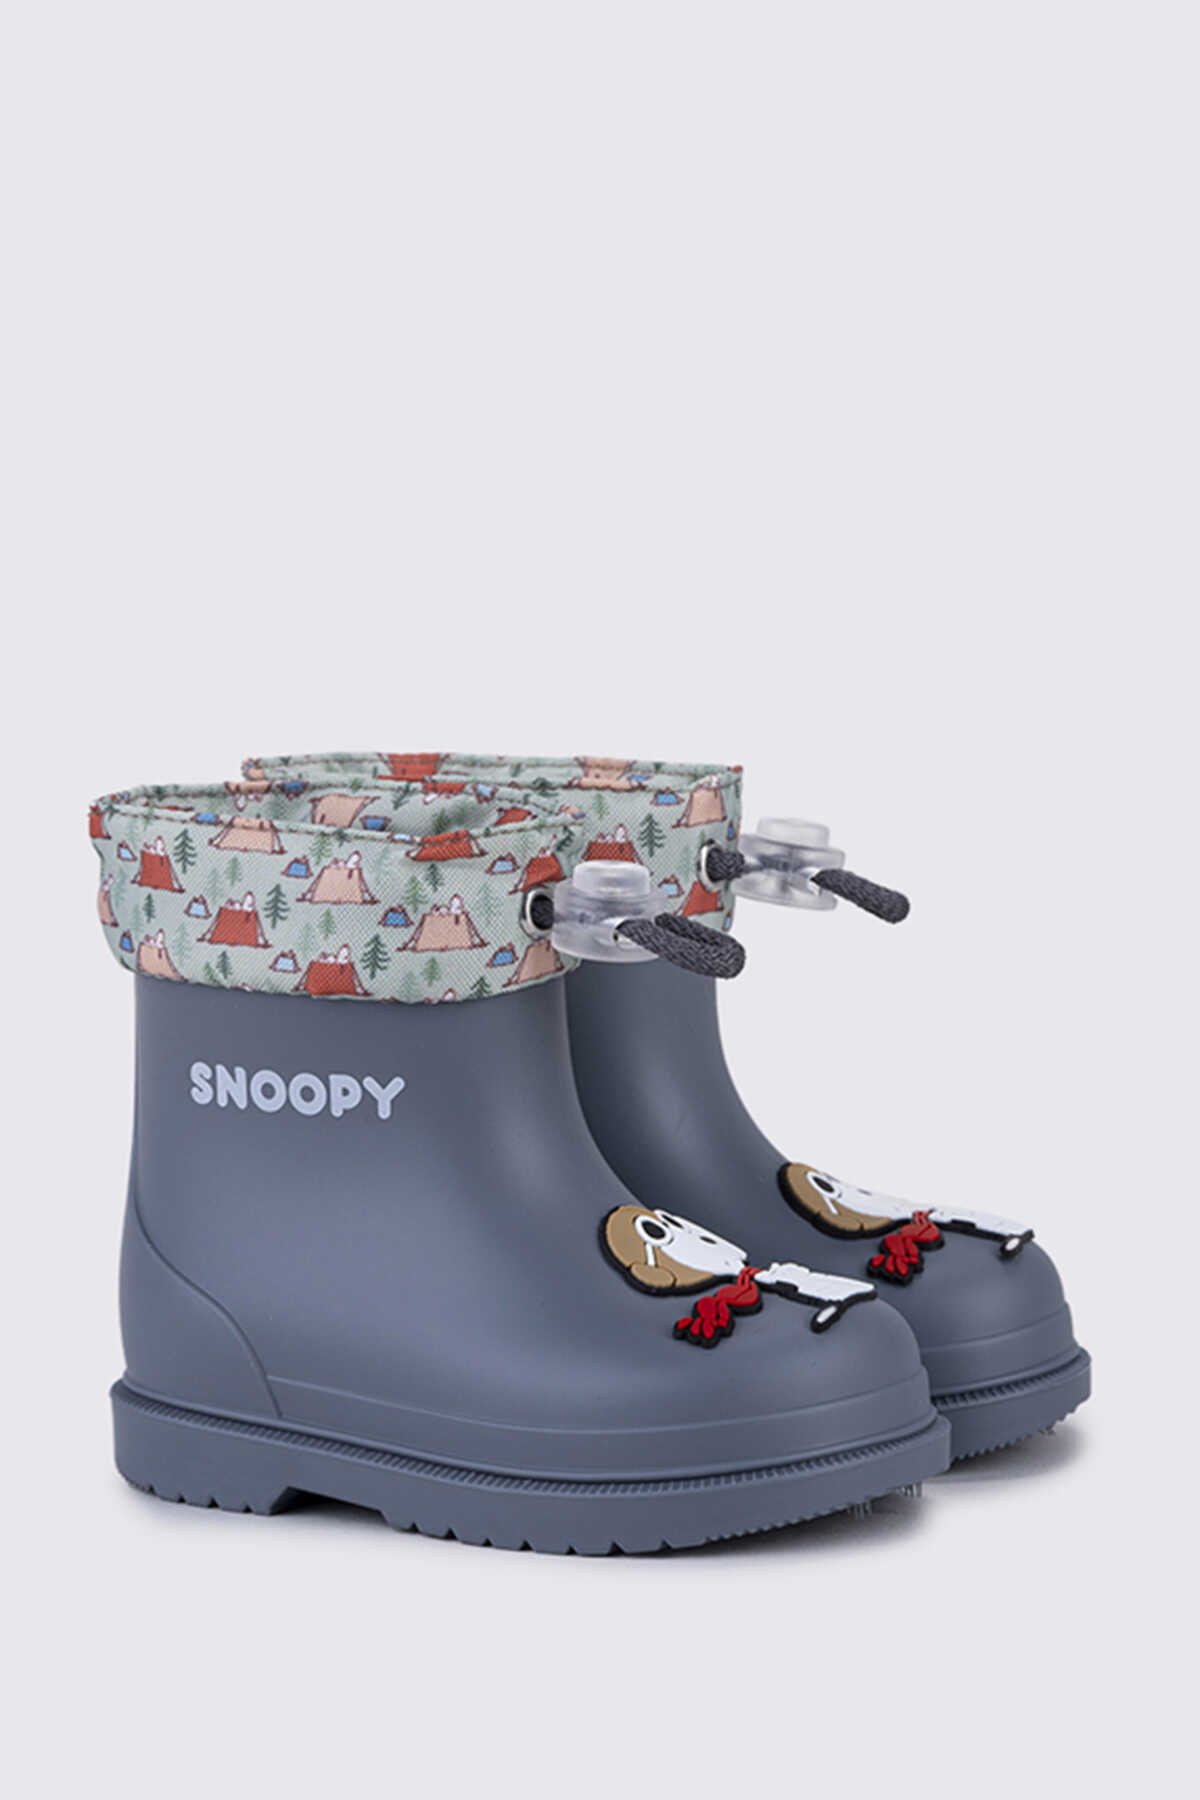 Igor - Igor BIMBI SNOOPY Yağmur Çizmesi Unisex Çocuk Ayakkabı Açık Mavi